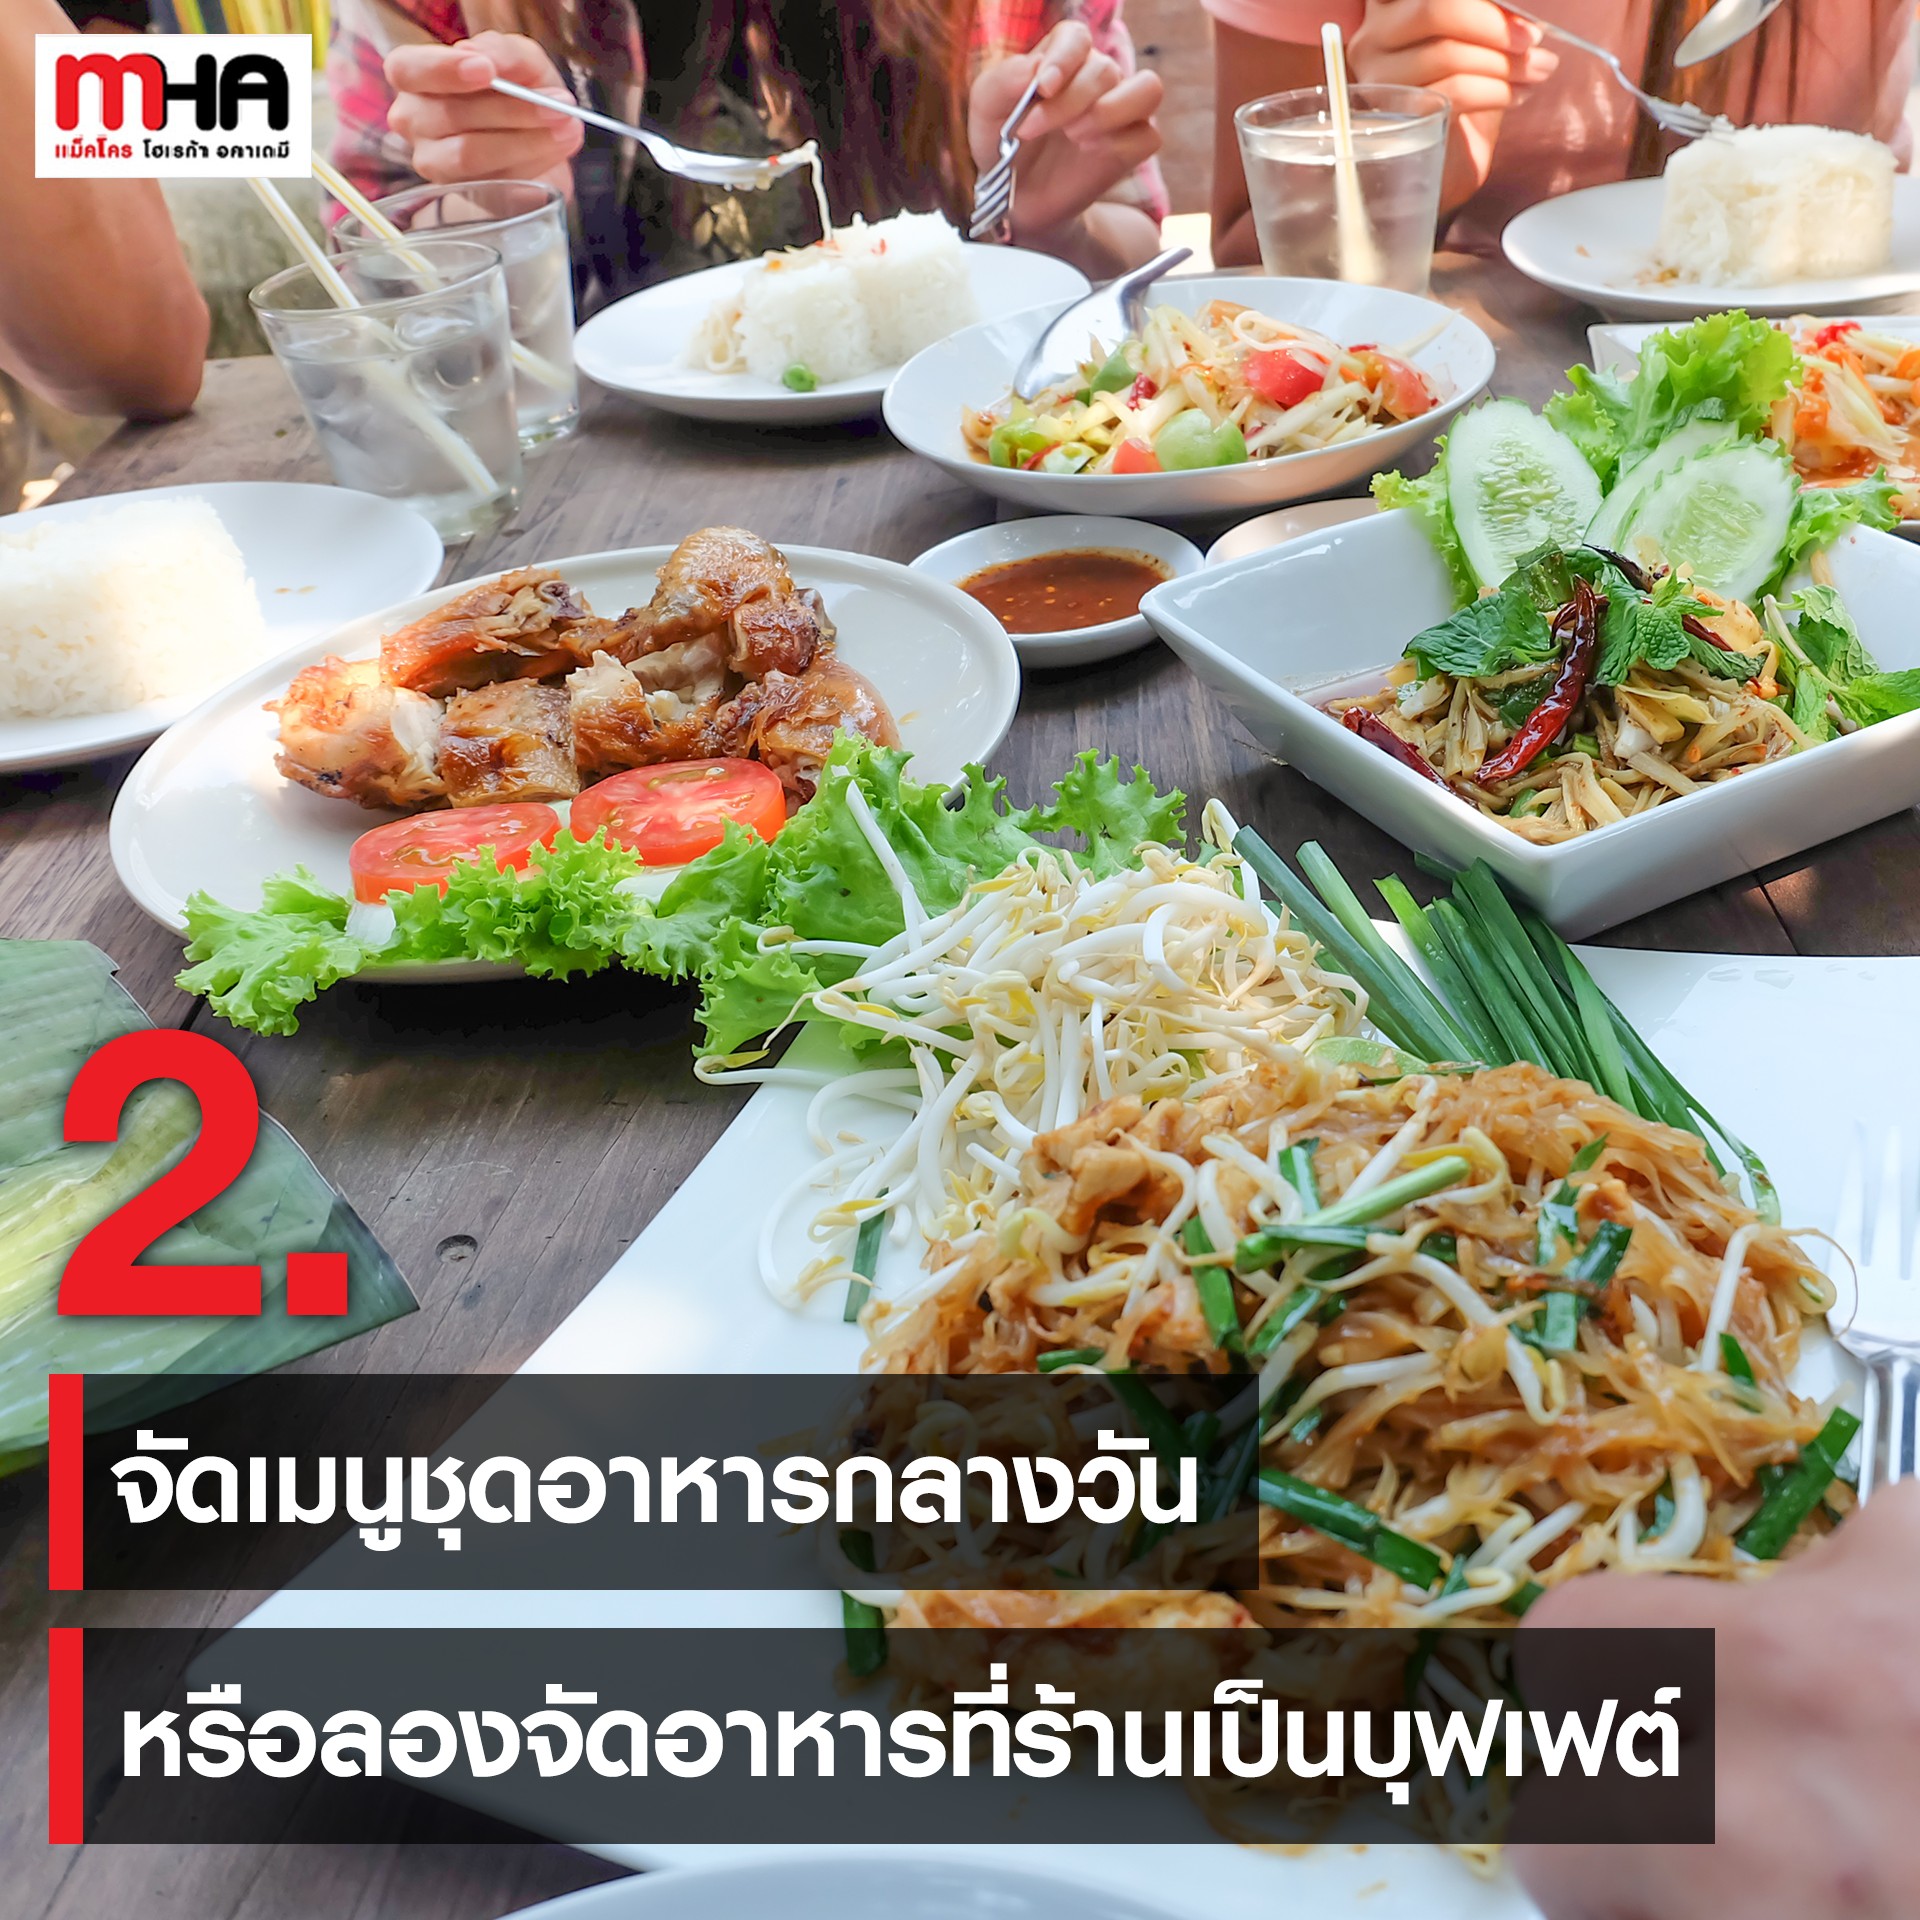 ร้านอาหารไทย ขายดีแค่ตอนเย็น ทำอย่างไร ให้หัวกระไดไม่แห้ง ออเดอร์เข้ารัว! -  บทความ - Mha